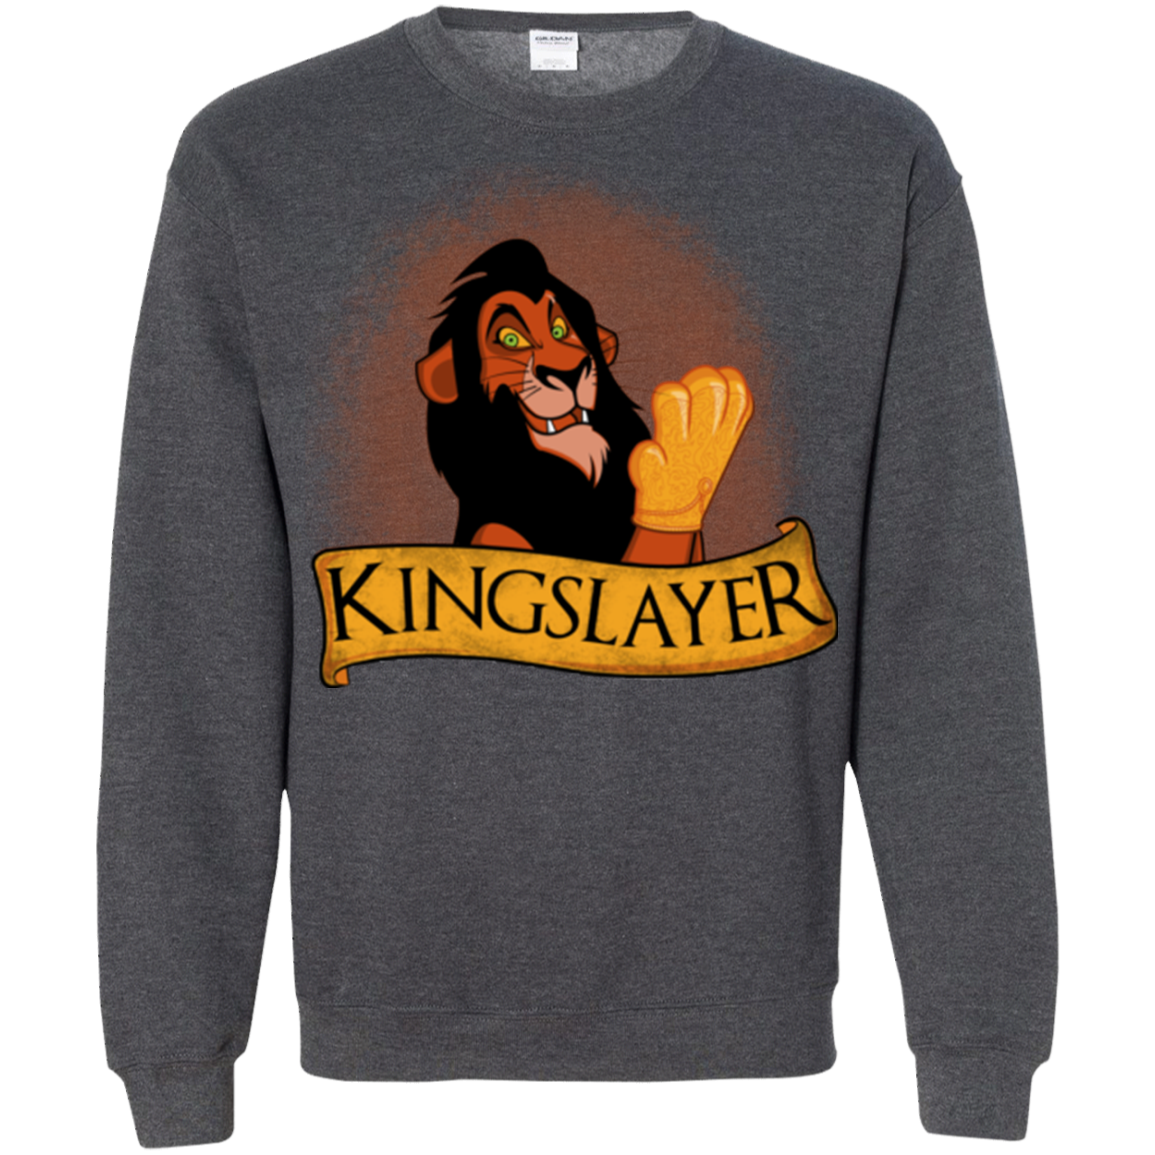 Kingslayer Crewneck Sweatshirt